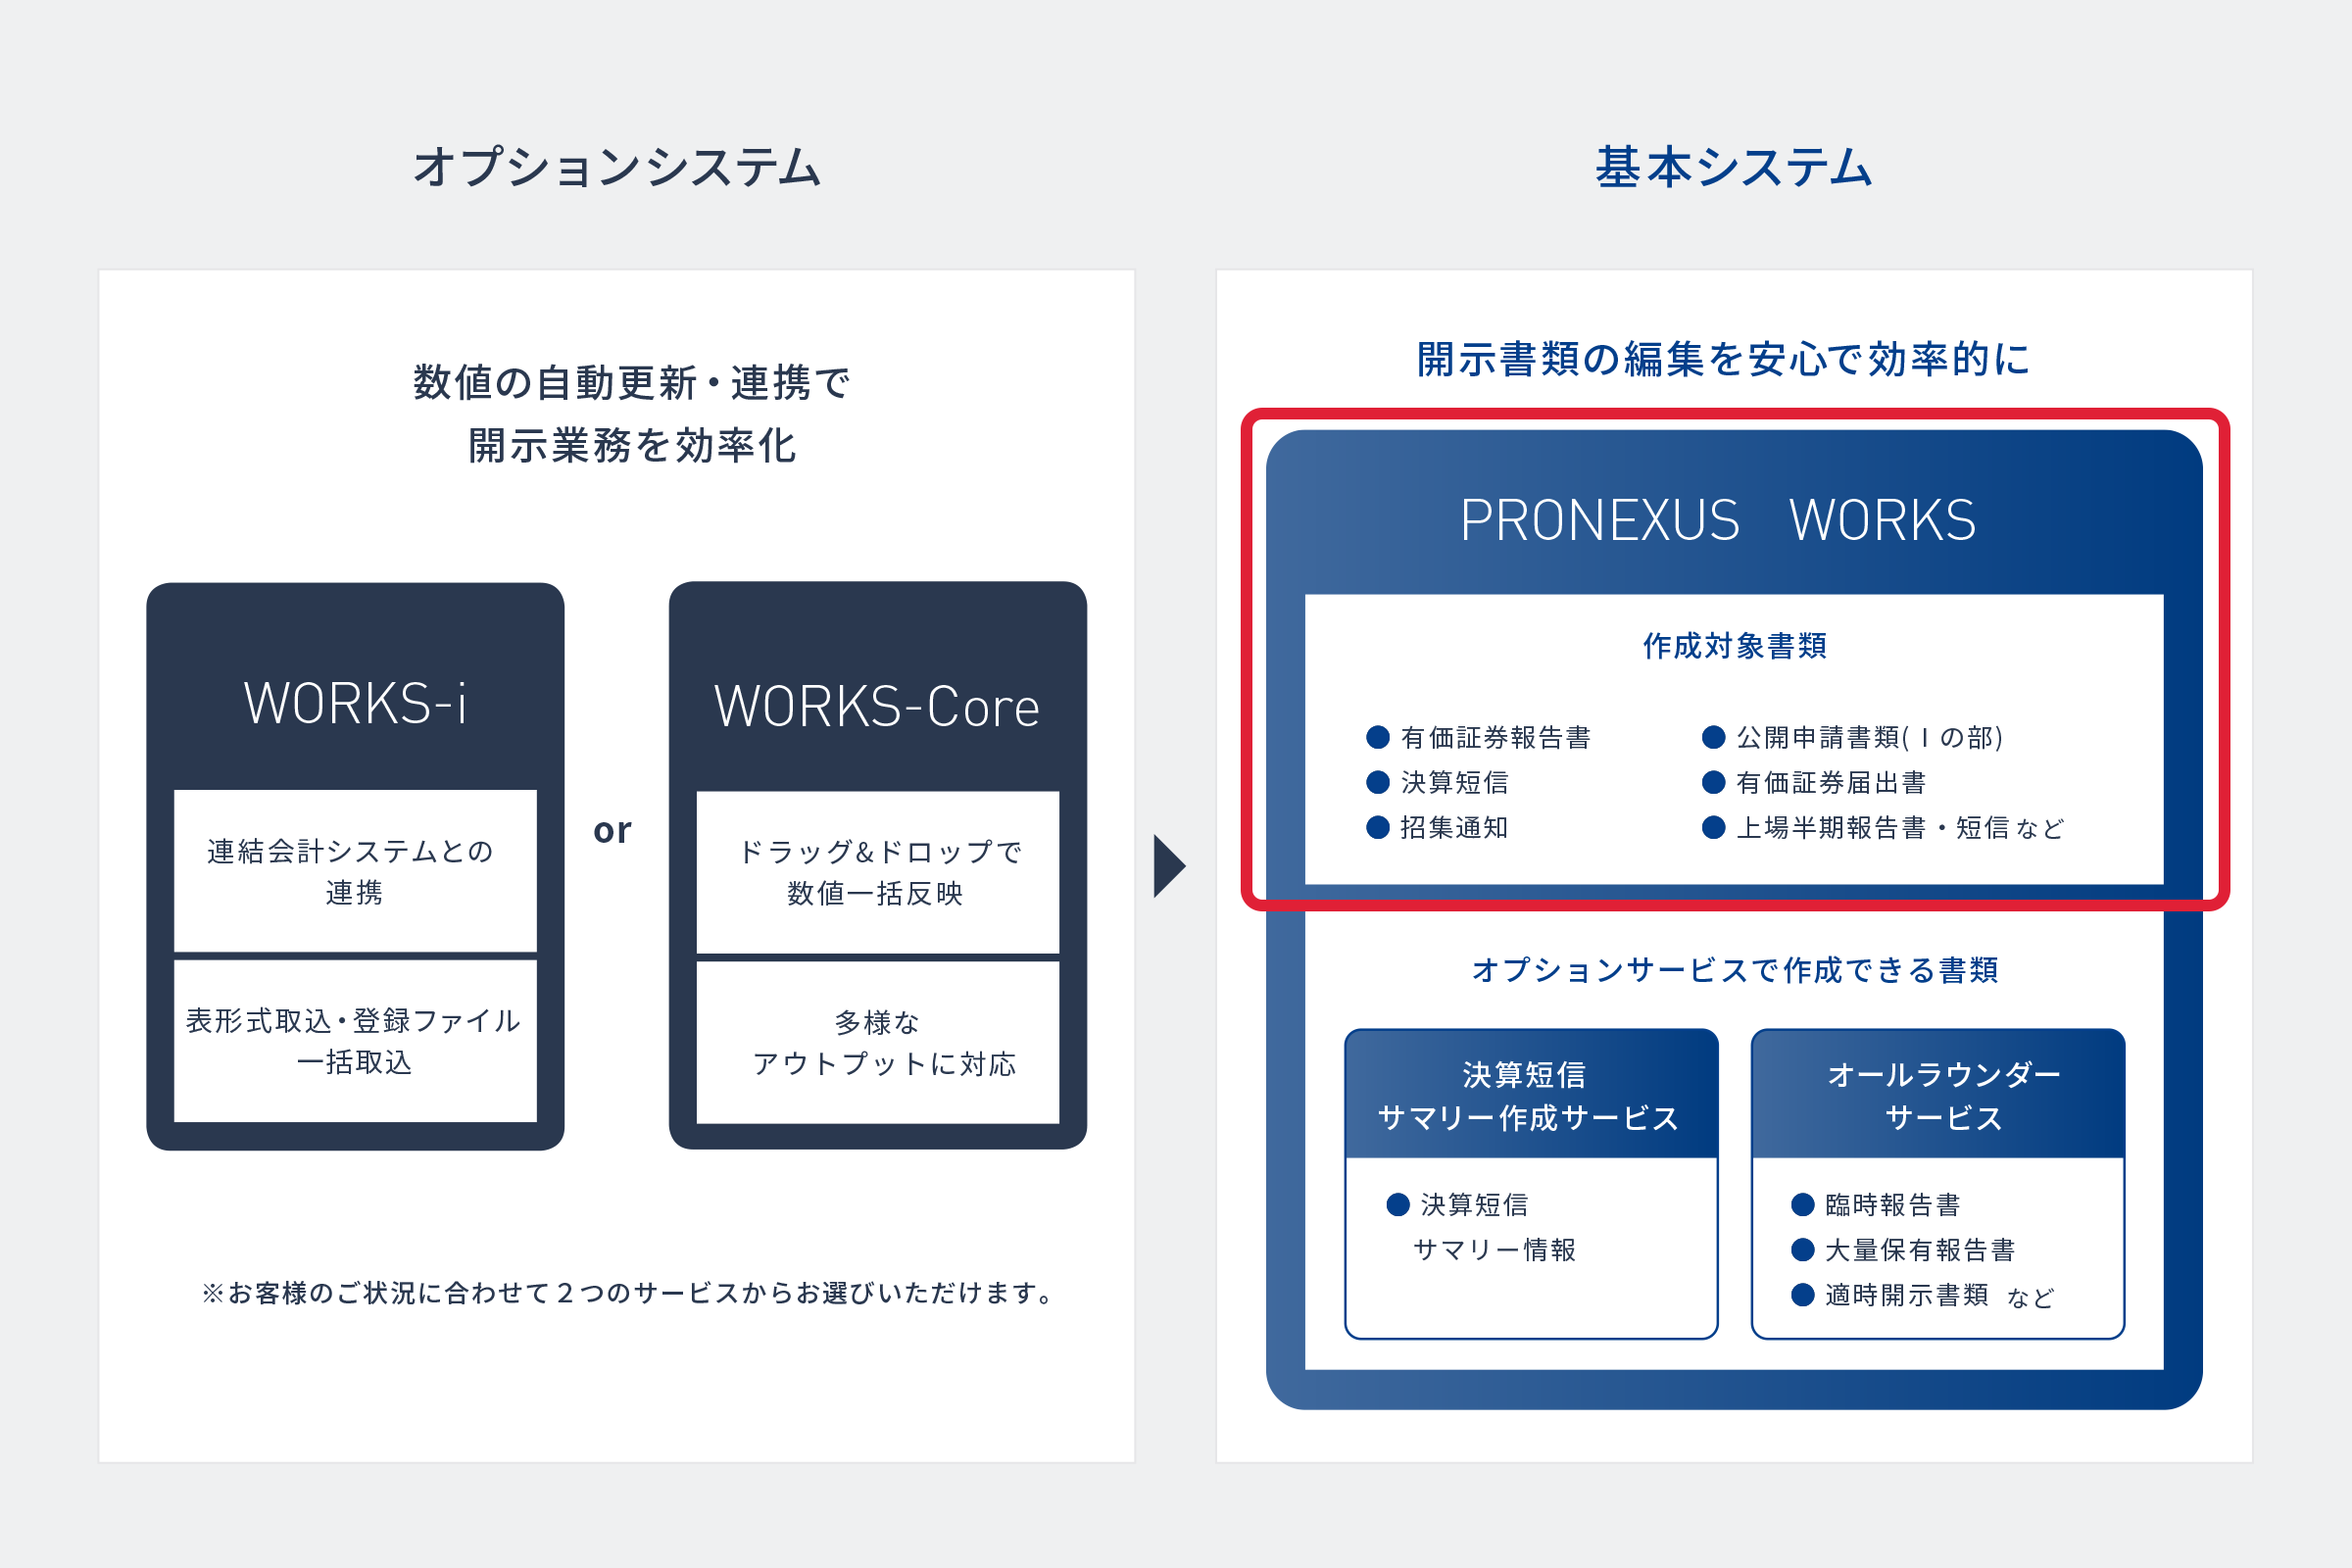 PRONEXUS WORKSシステムラインナップ 図